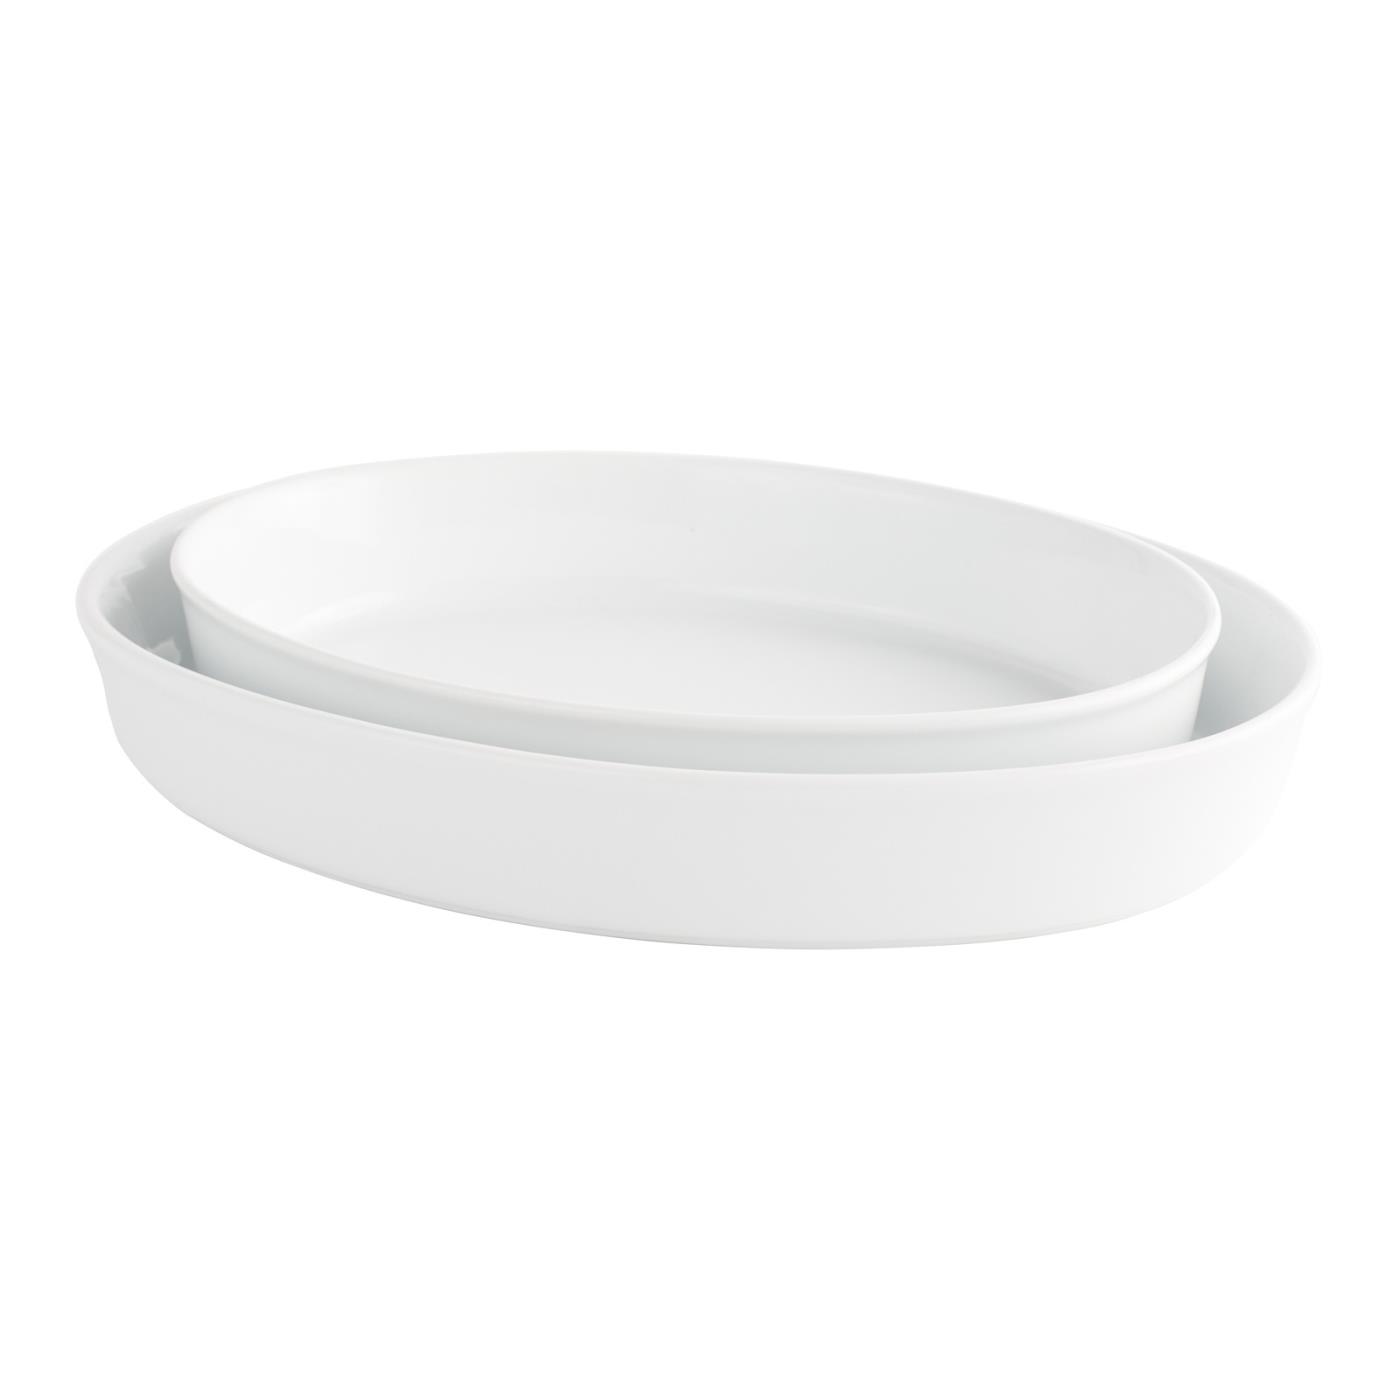 White Ceramic Oval Casserole Dish